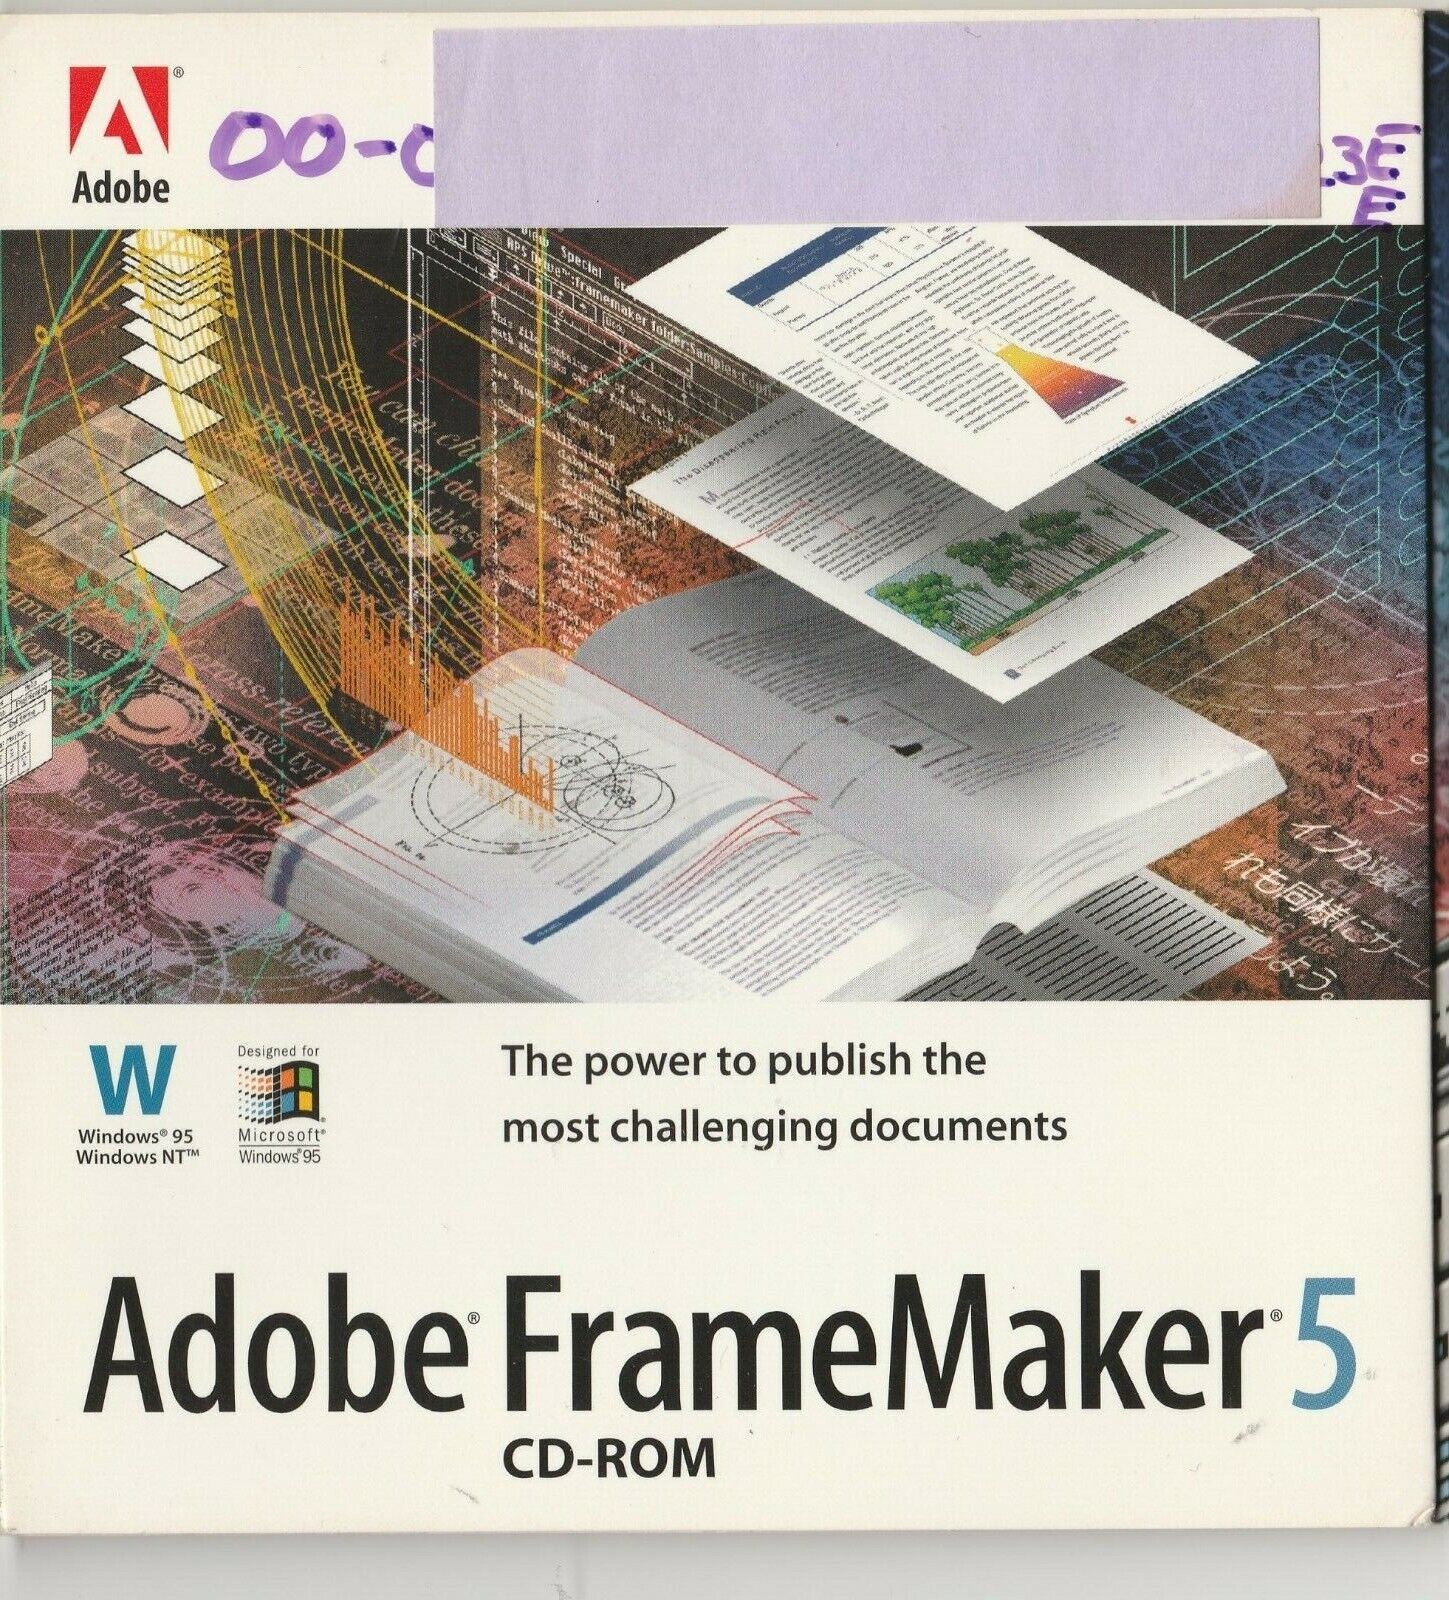 Adobe Framemaker 5 Cd-Rom for Windows 95/NT 1996 VTG